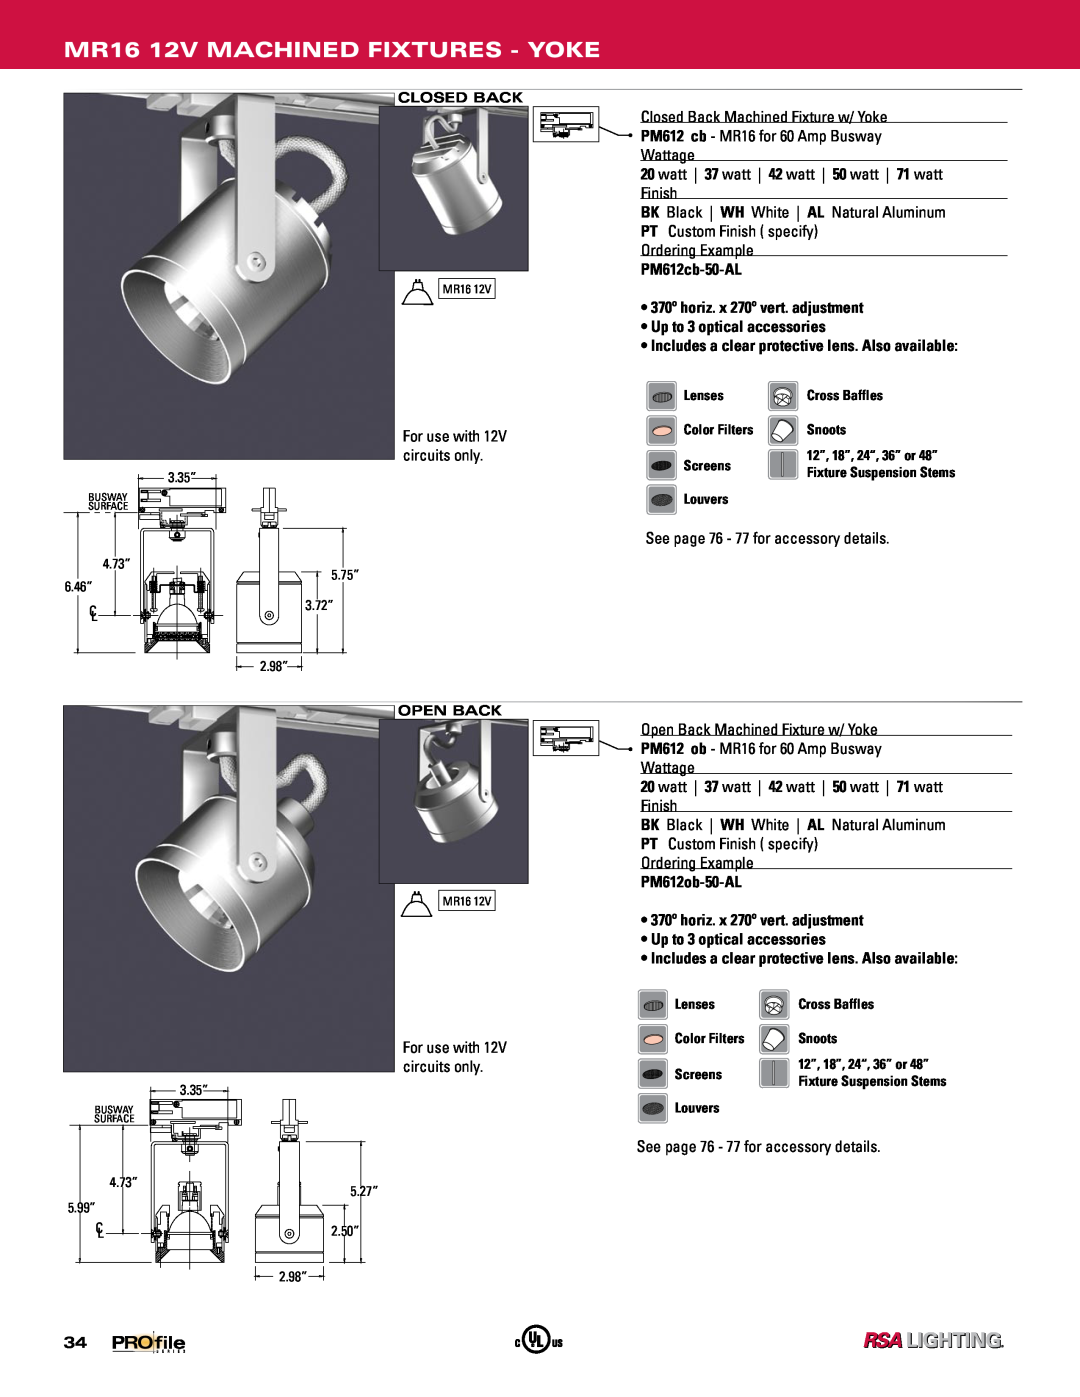 Profile Machined Aluminum Fixtures manual MR16 12V MACHINED FIXTURES - YOKE, PM612cb-50-AL, PM612ob-50-AL 